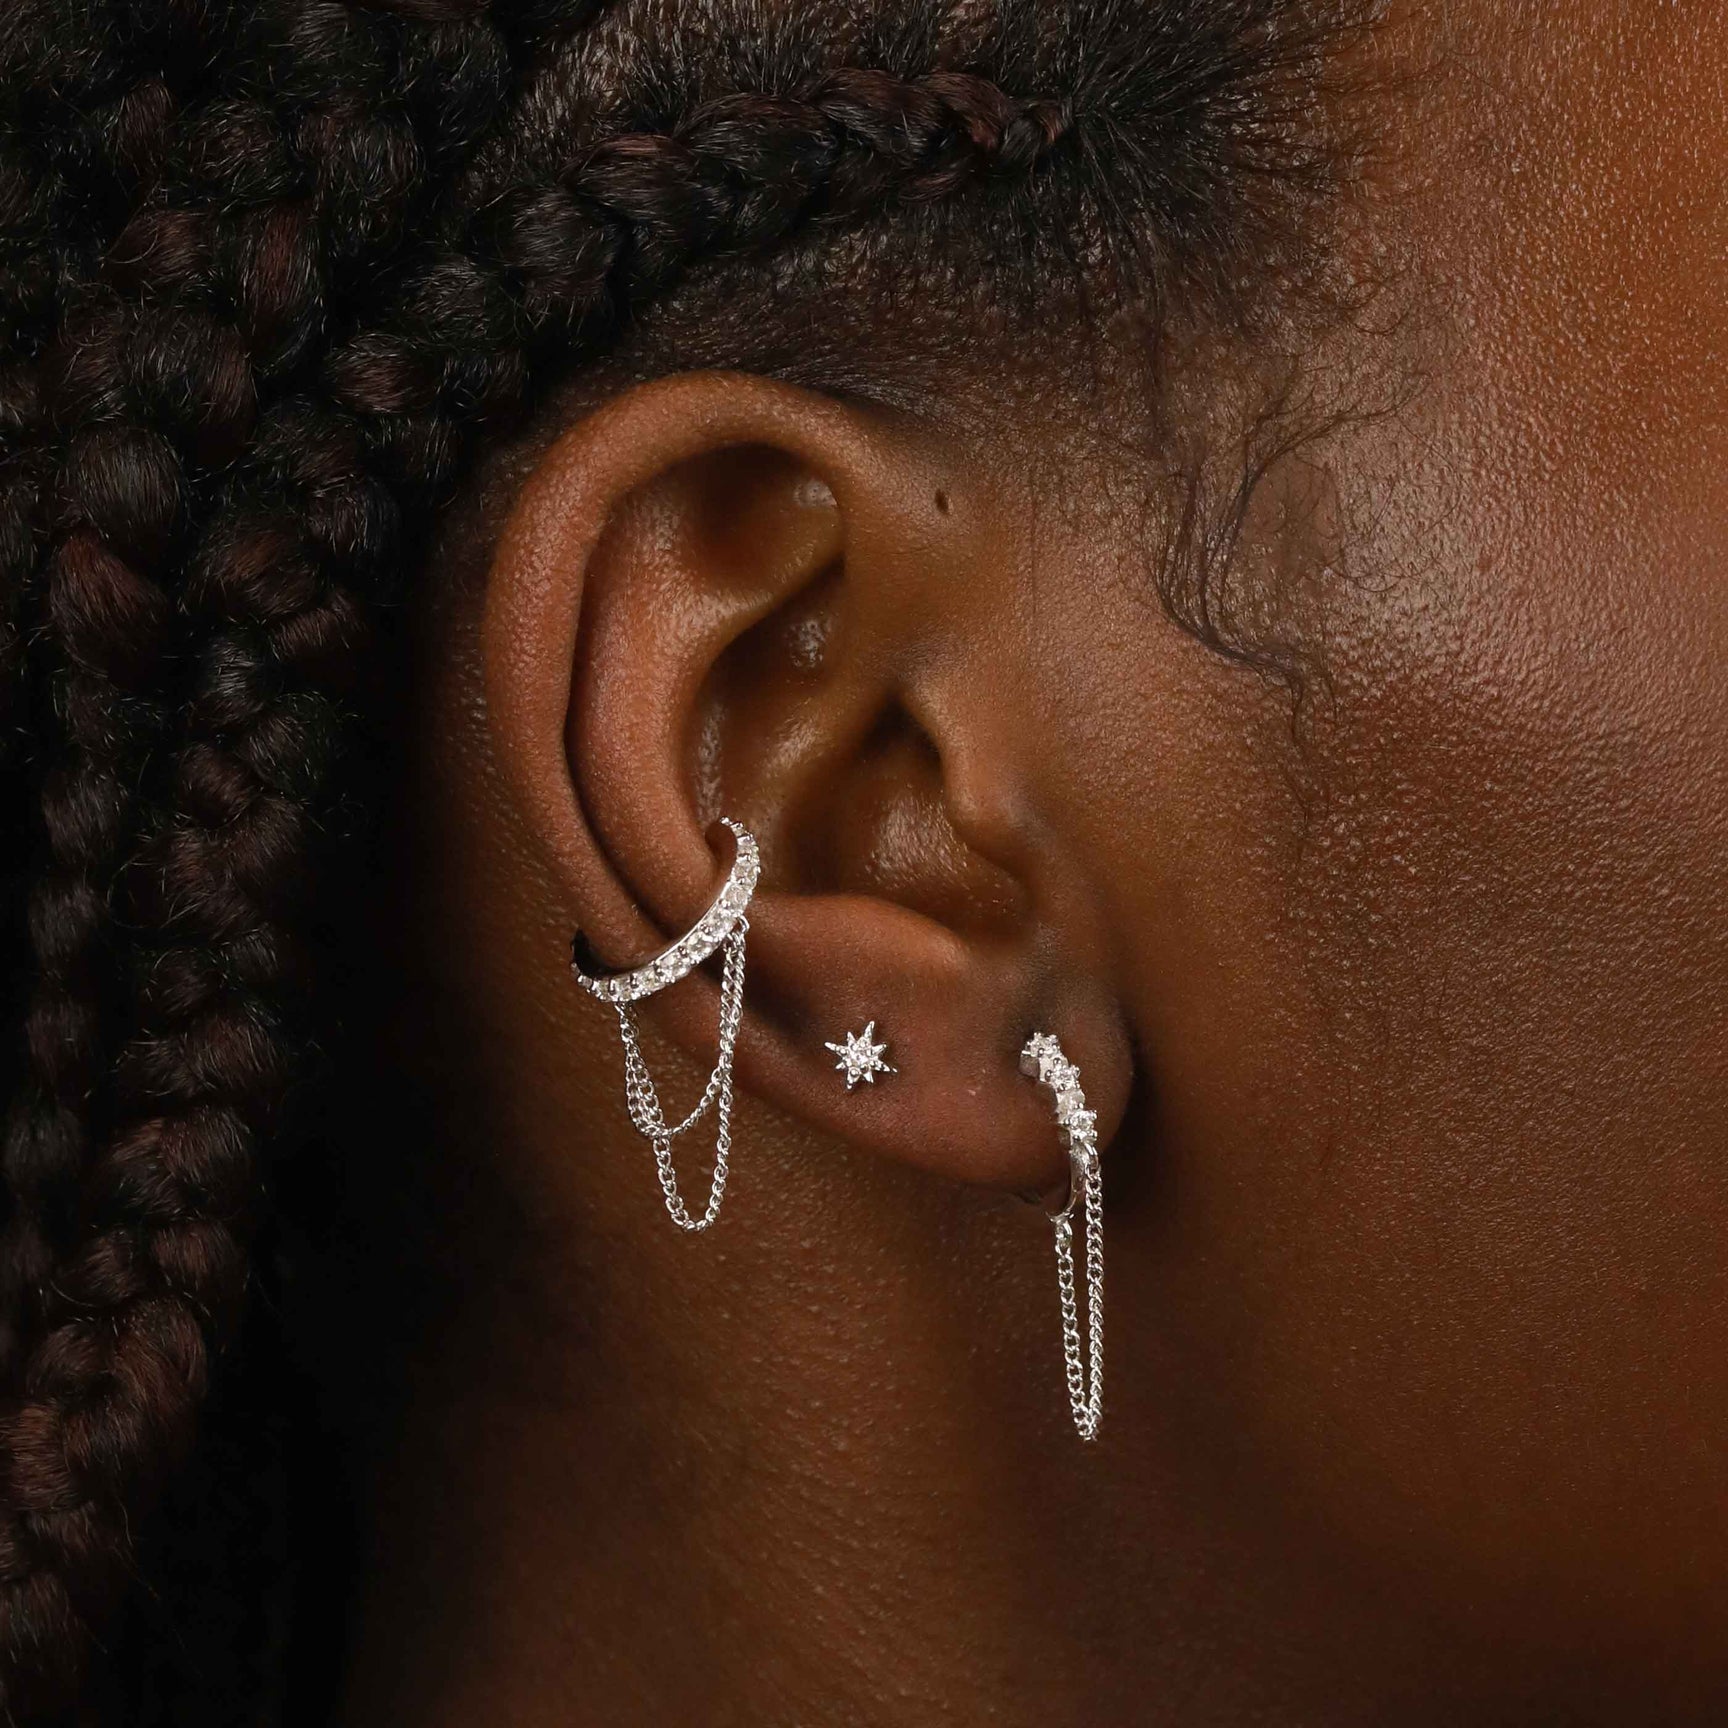 Crystal Chain Ear Cuff in Silver